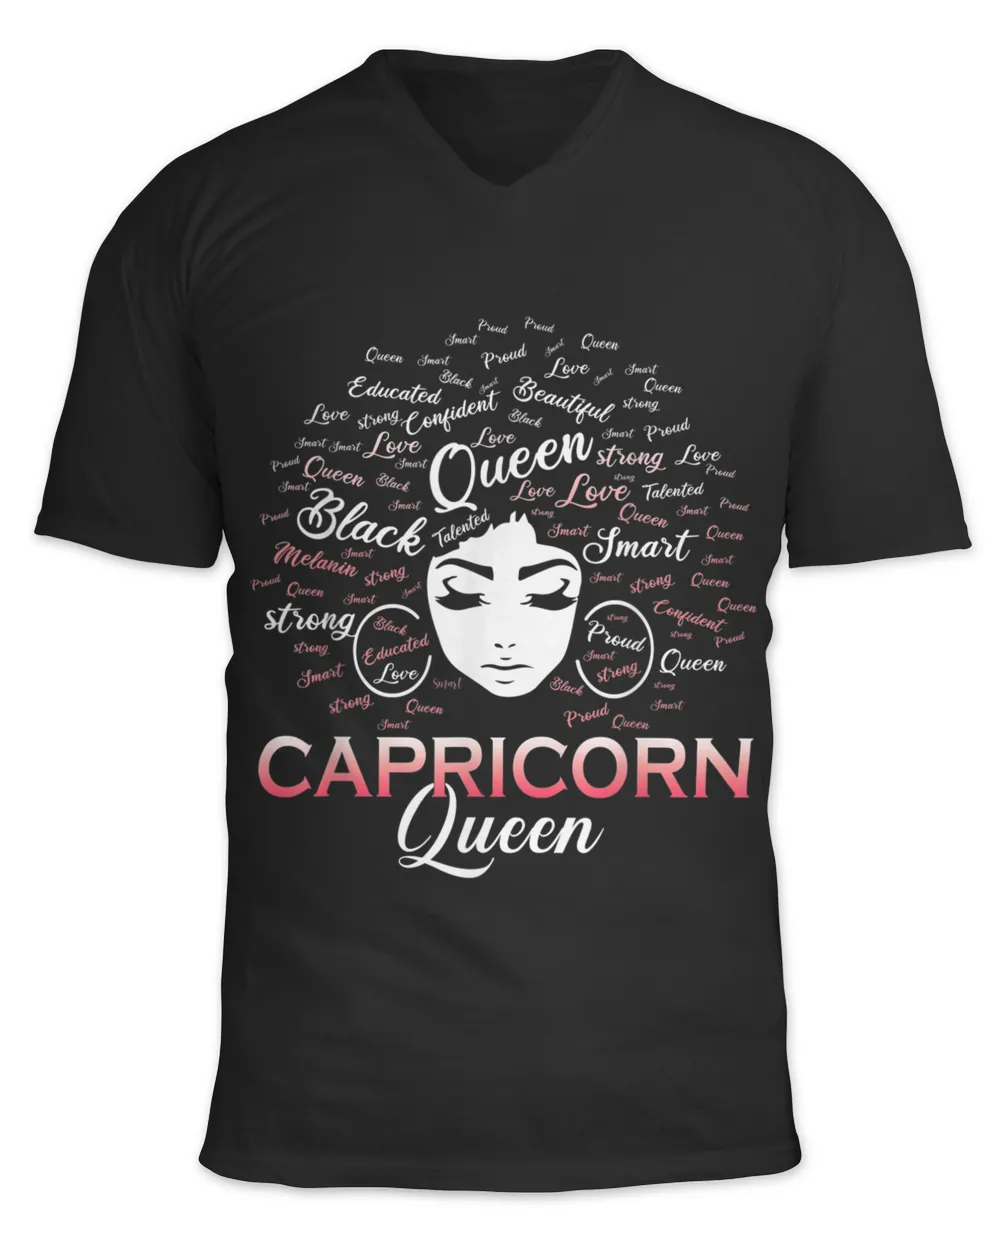 Capricorn Queen T-Shirt